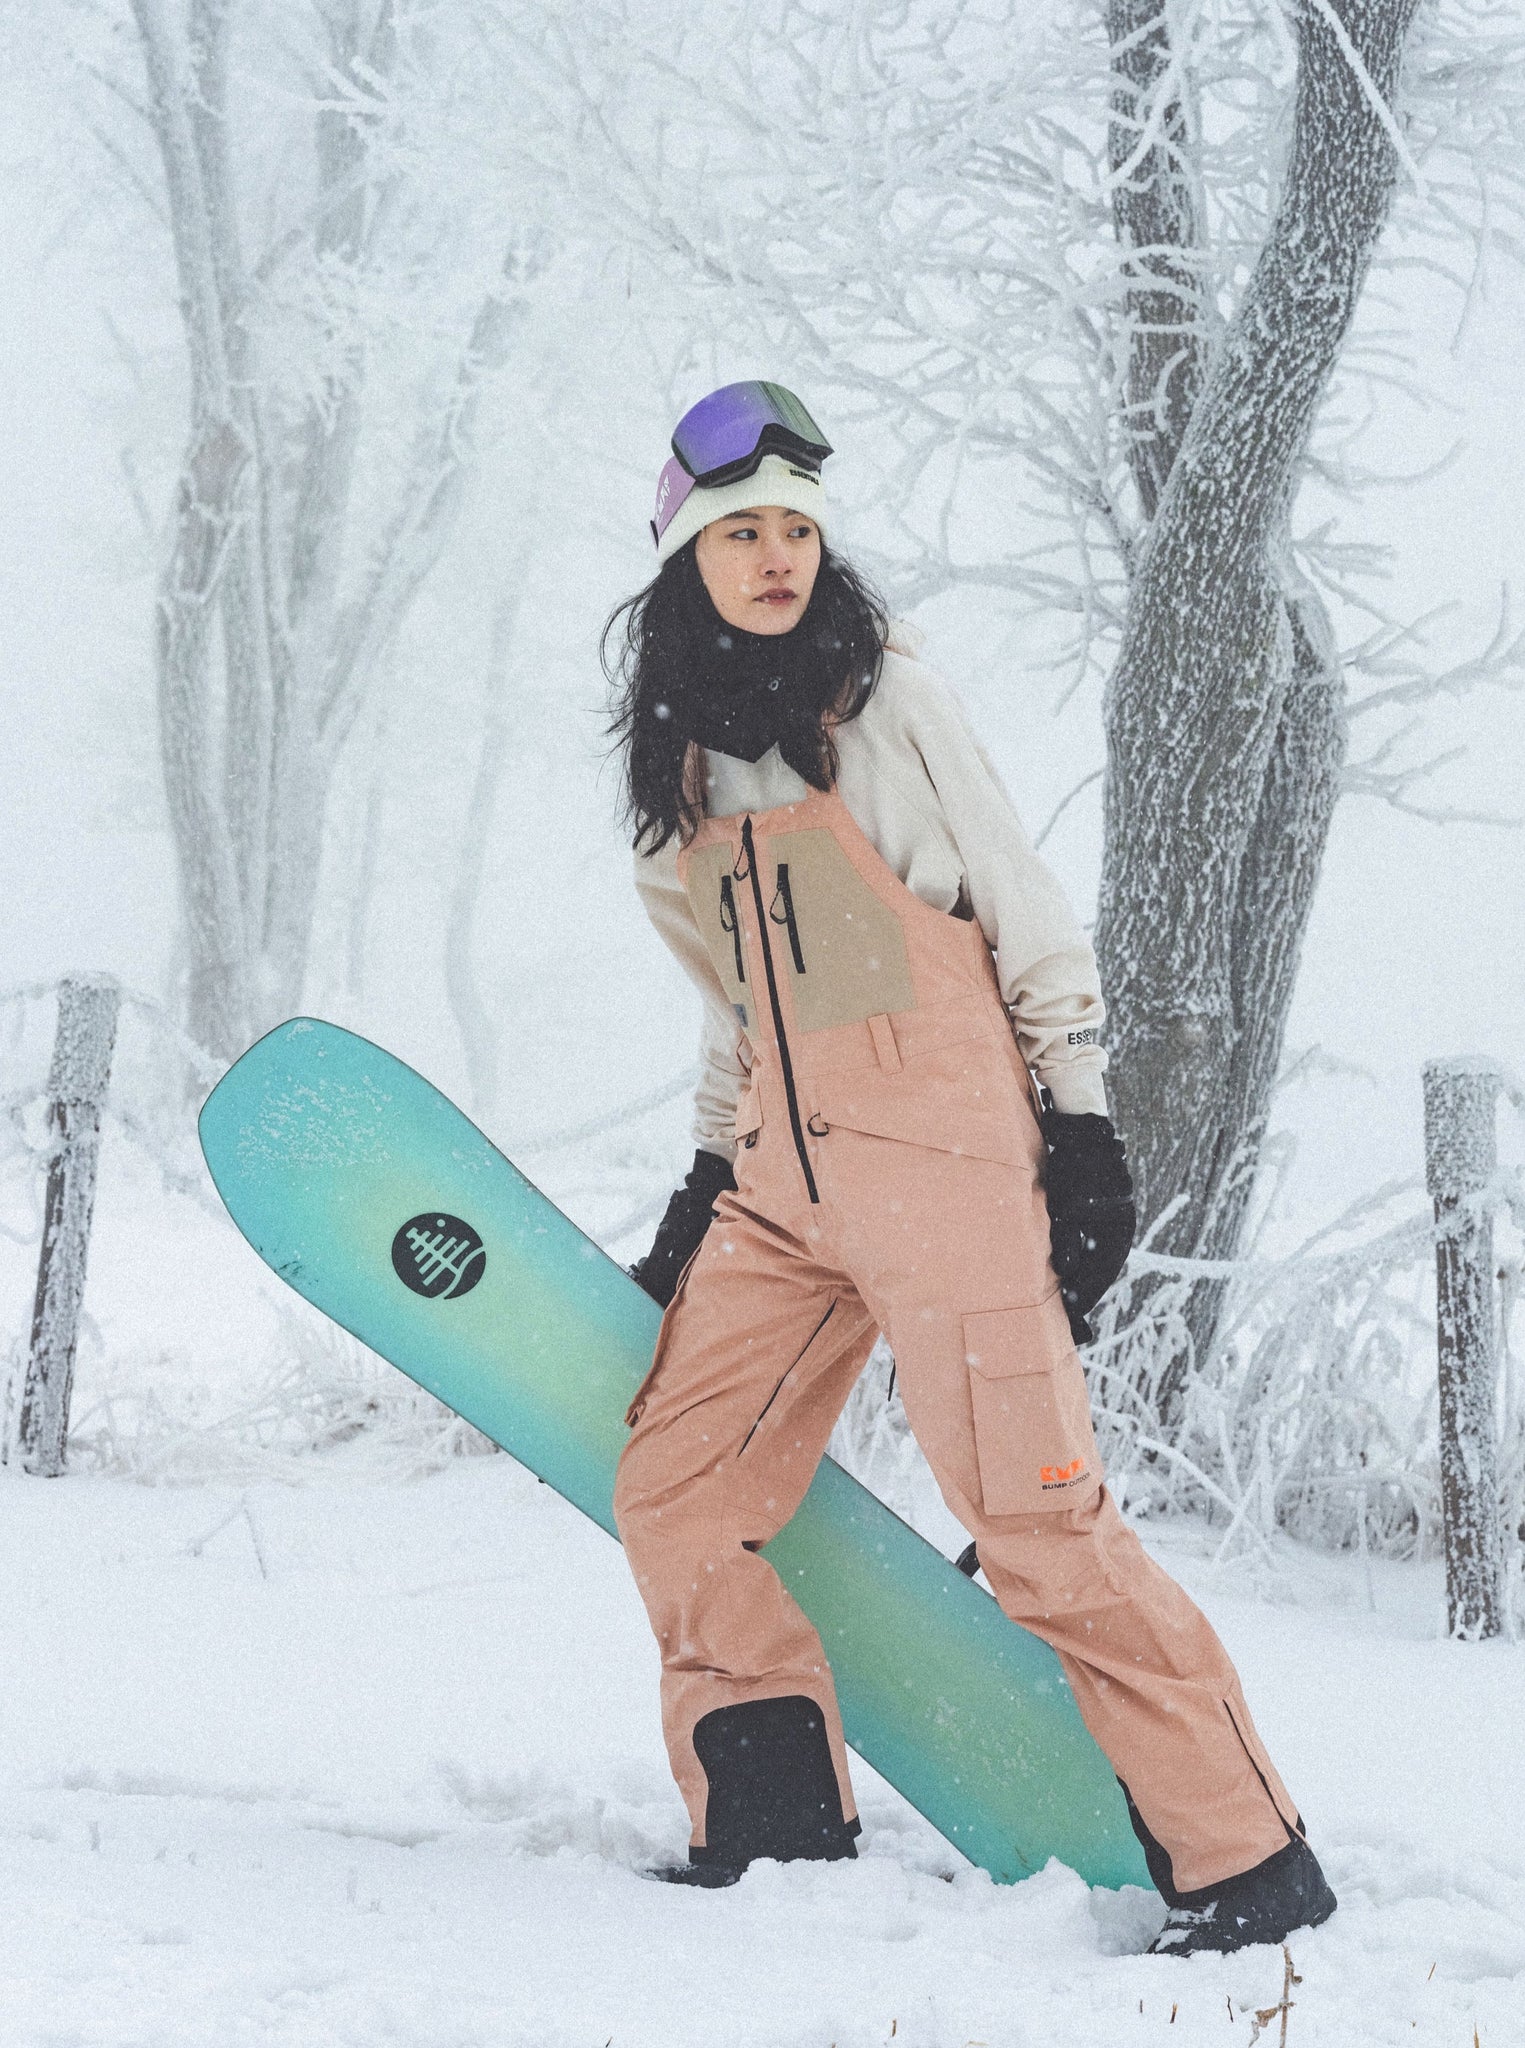 Women's Searipe Unisex Stylish Mountain Discover Snowboard Pants Ski Bibs, Stylish Womens Ski Outfits